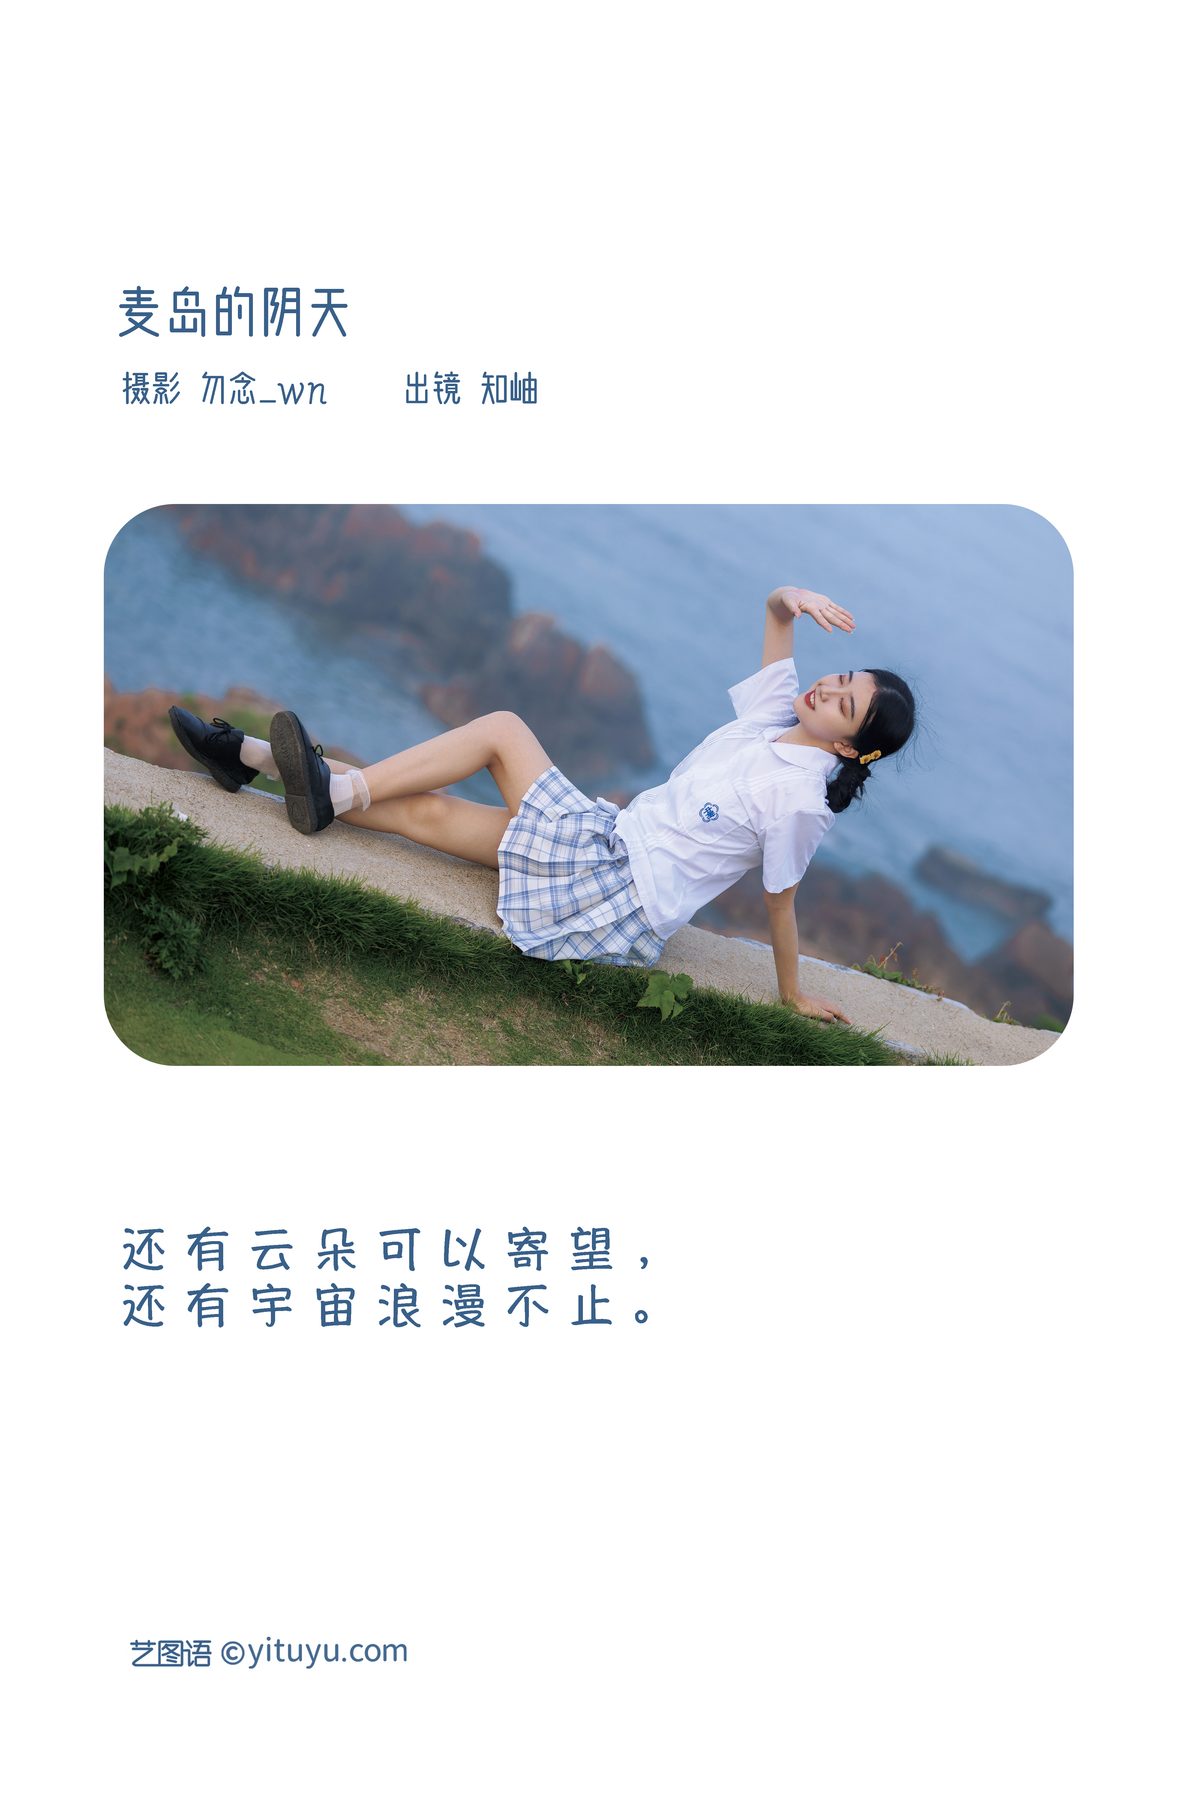 YiTuYu艺图语 Vol 3486 Zhi Xiu 0001 9046830501.jpg